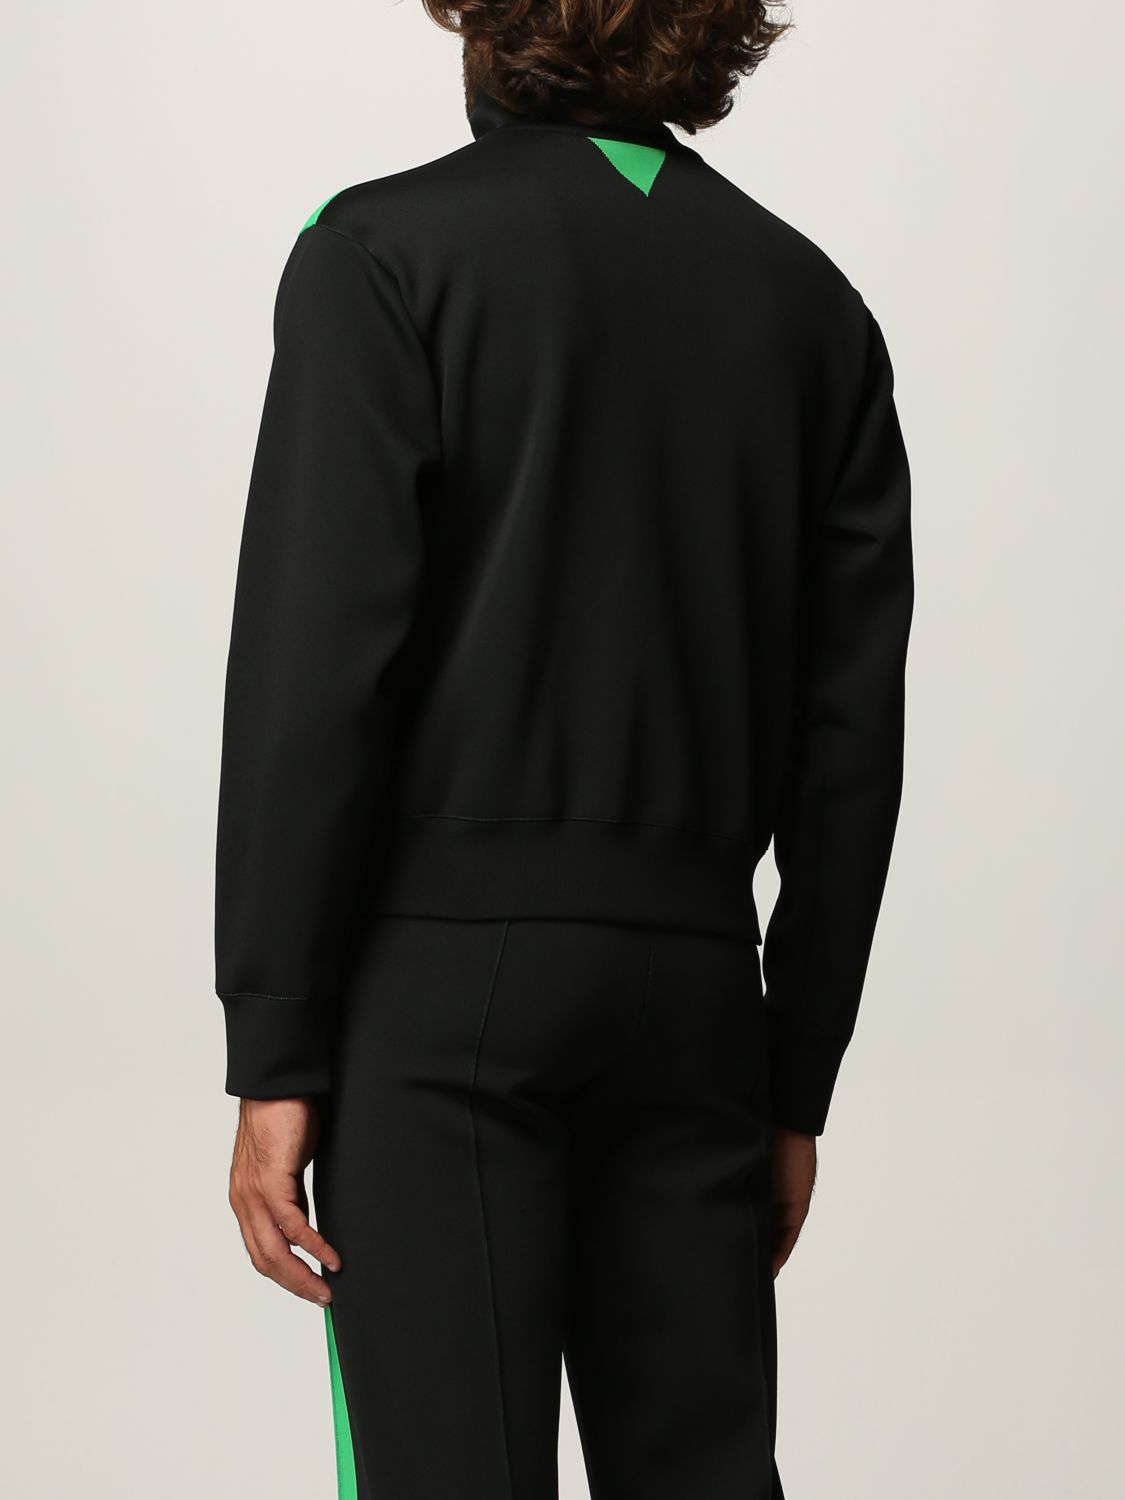 Bottega Veneta zip sweatshirt in double technical fabric